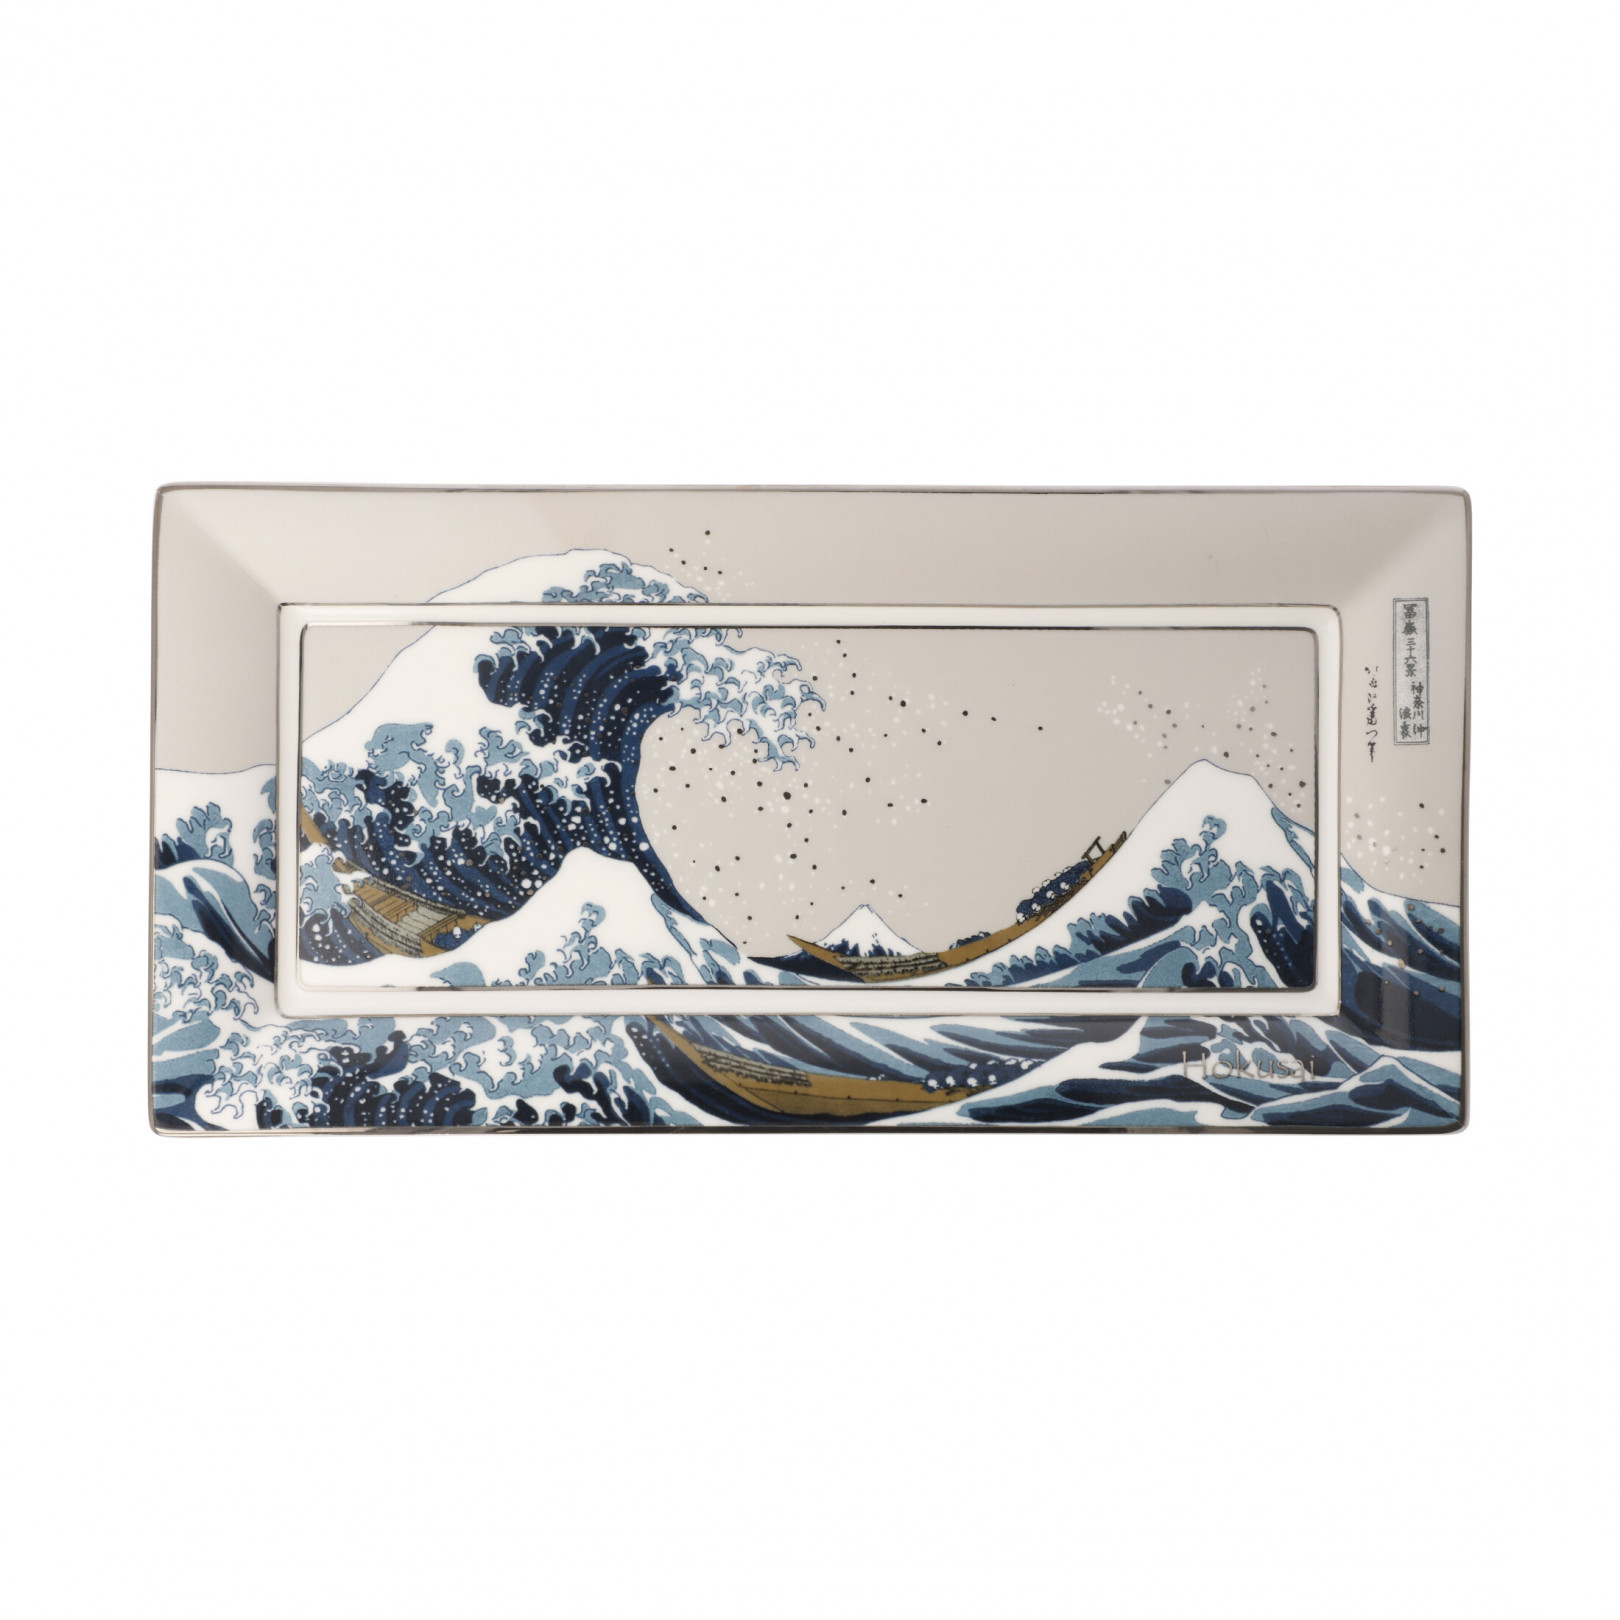 Misa prostokątna 24 cm K. Hokusai - Wielka fala  - Goebel